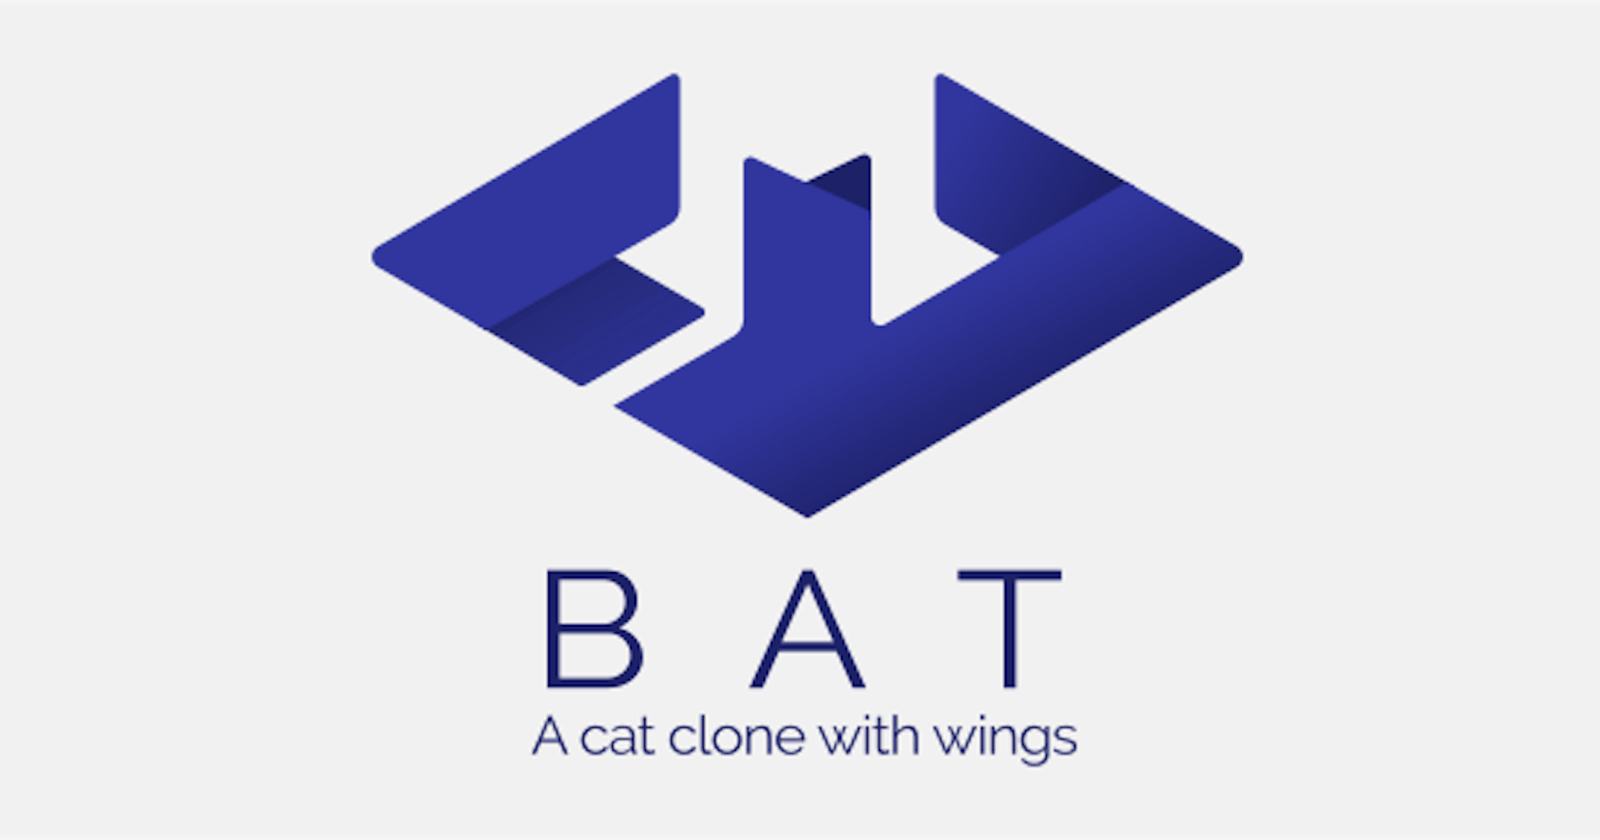 bat - a cat alternative